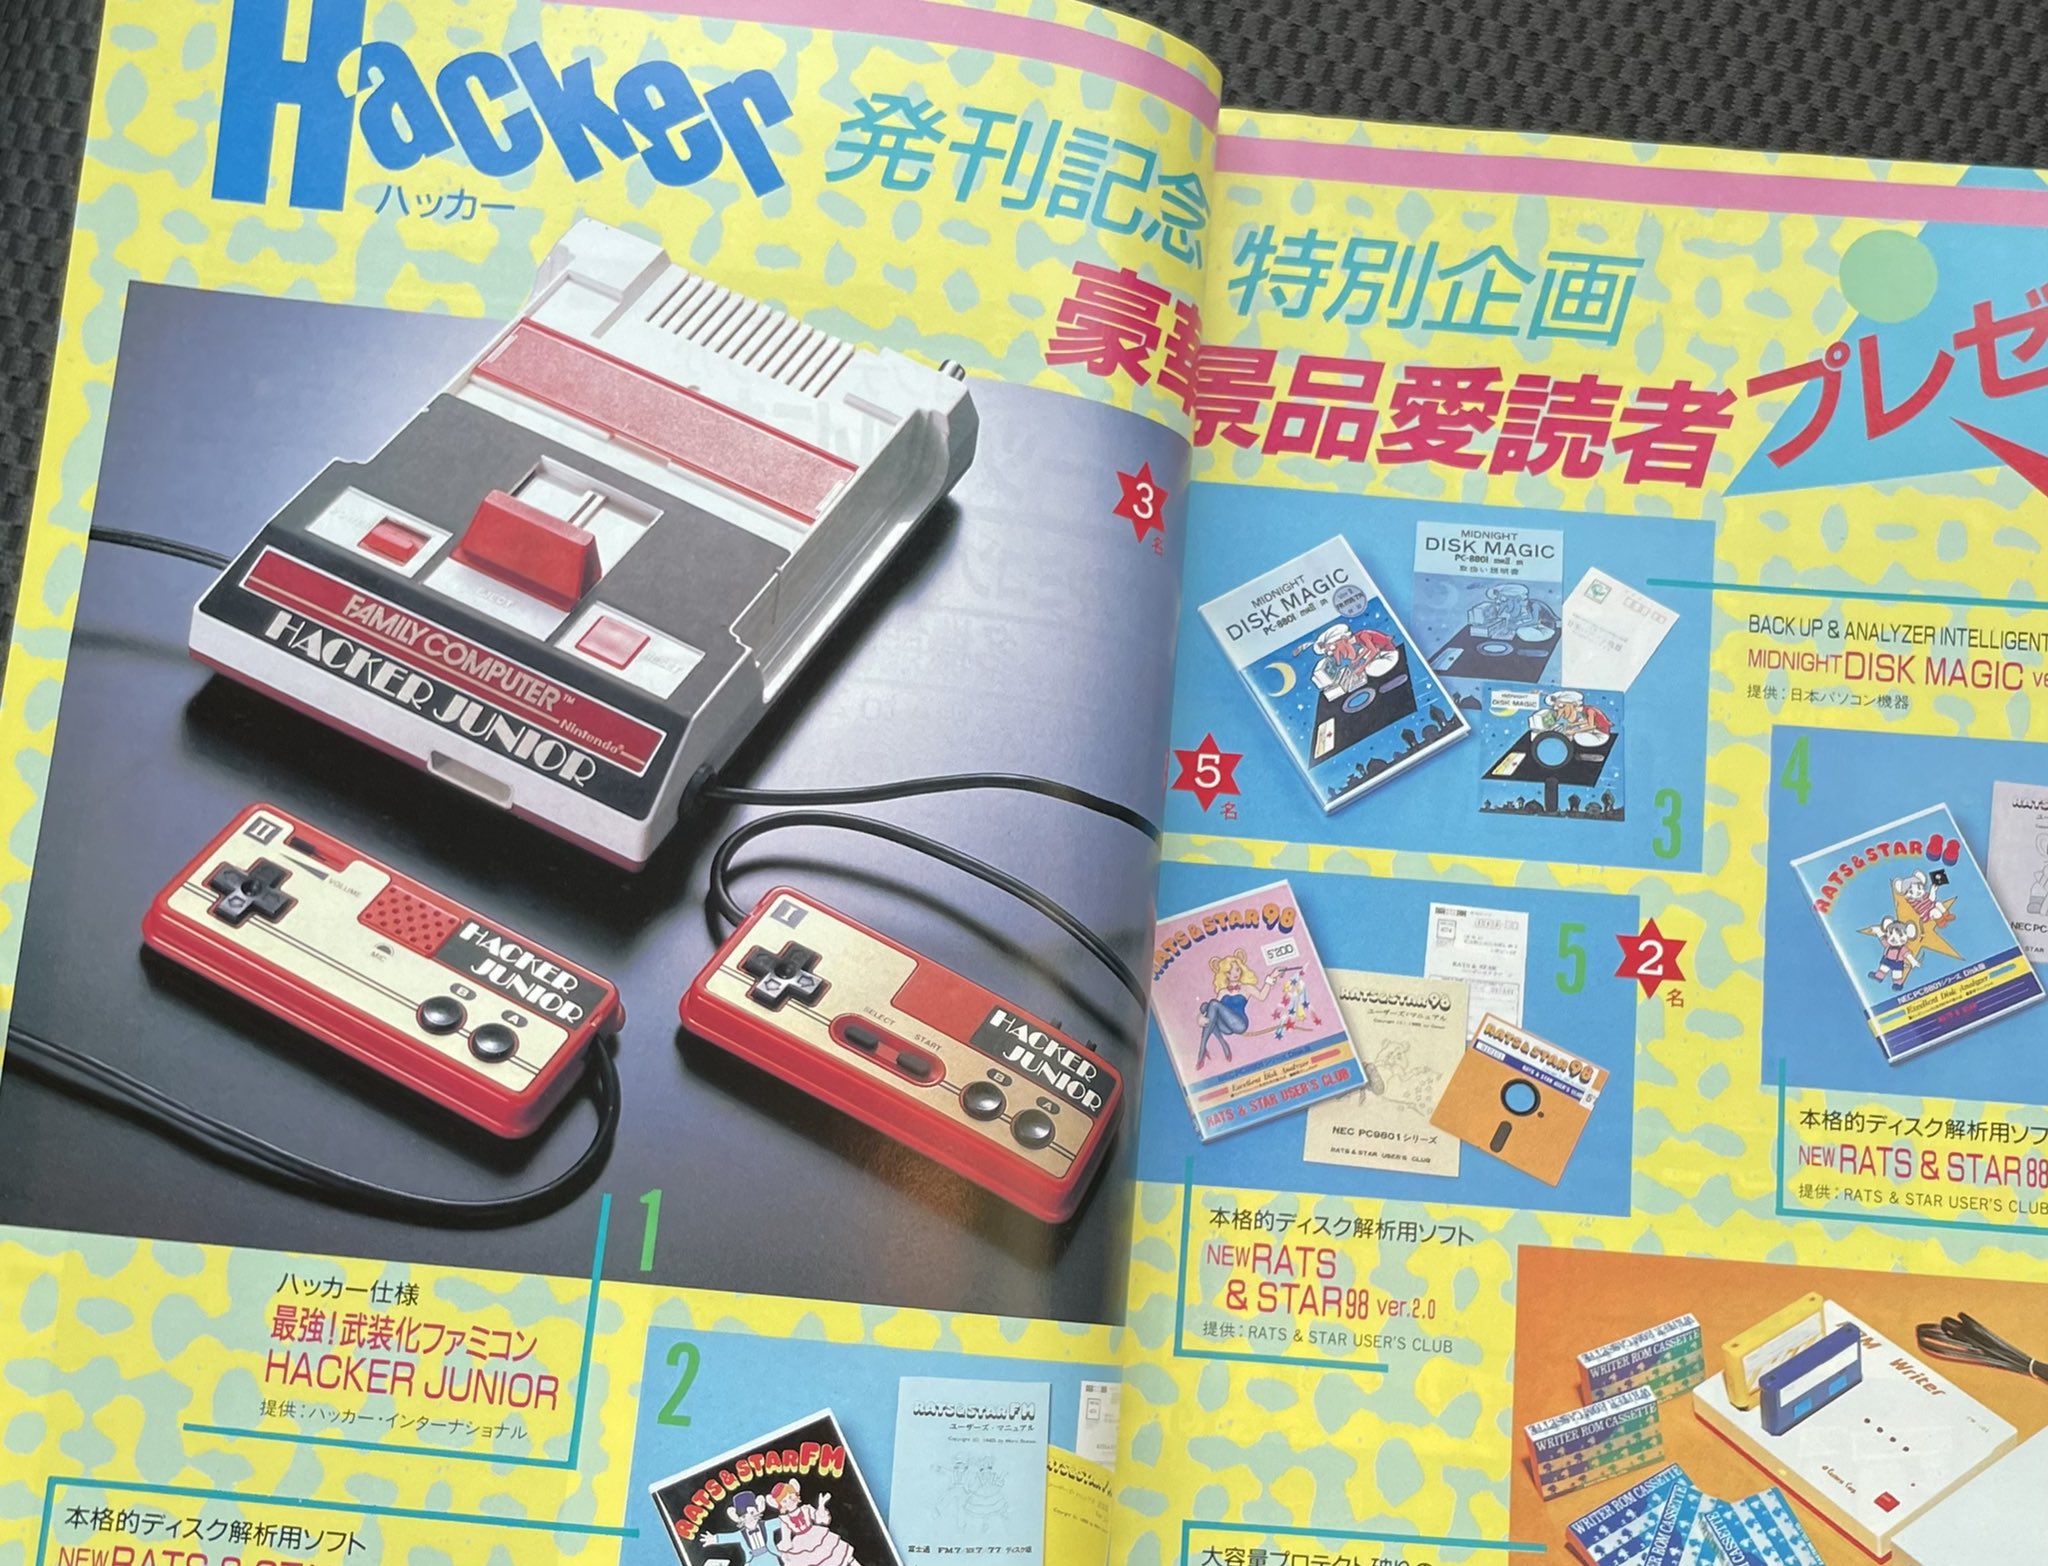 オロチ(Famicom Archivist) on X: 